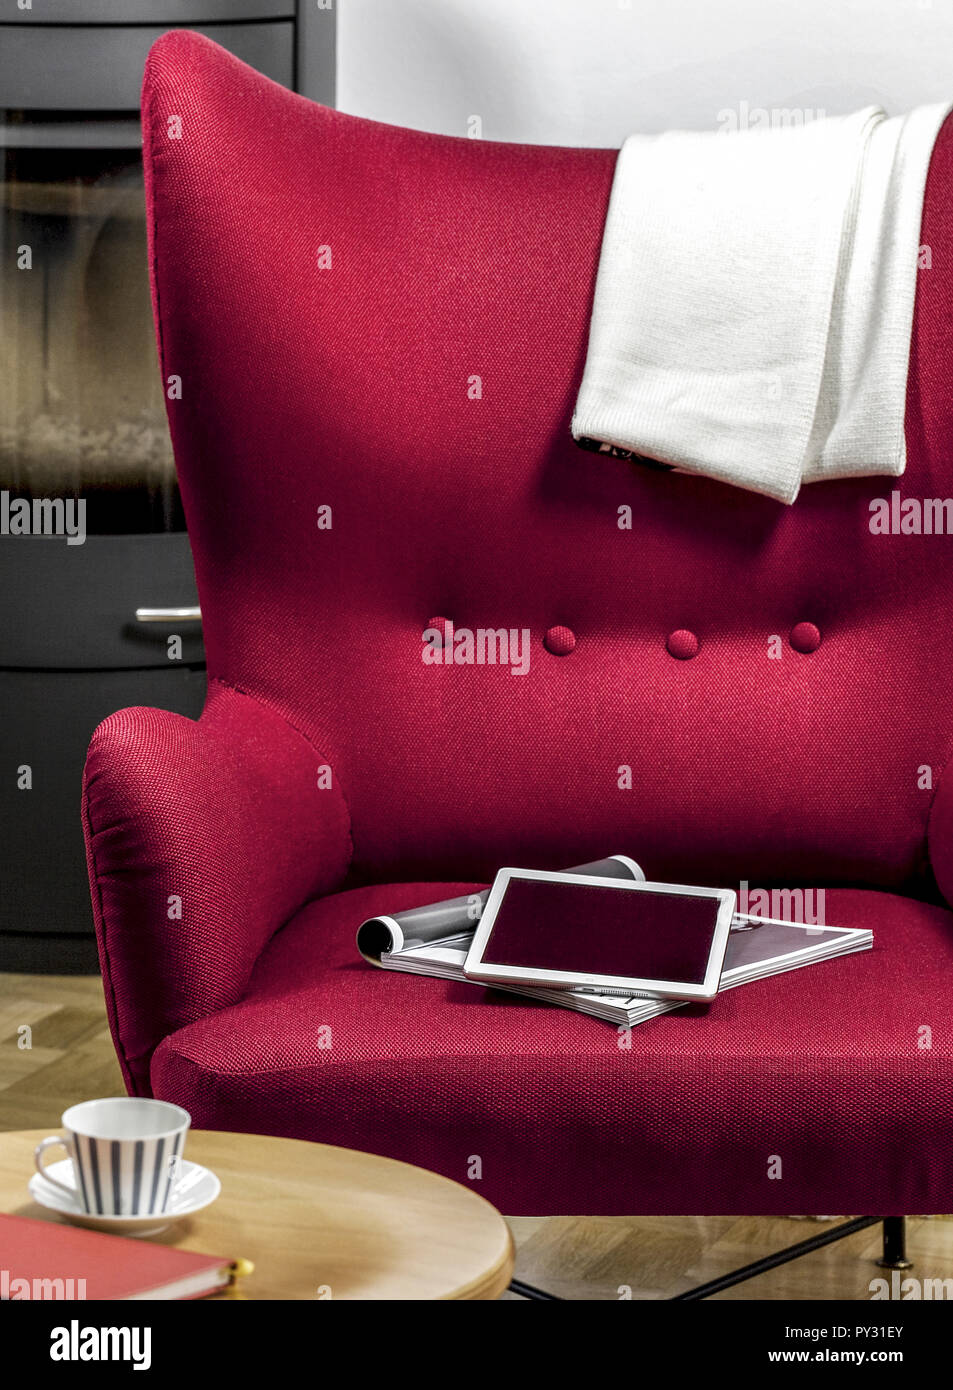 Tablet-PC und Zeitschrift liegen auf rotem Sessel Stock Photo